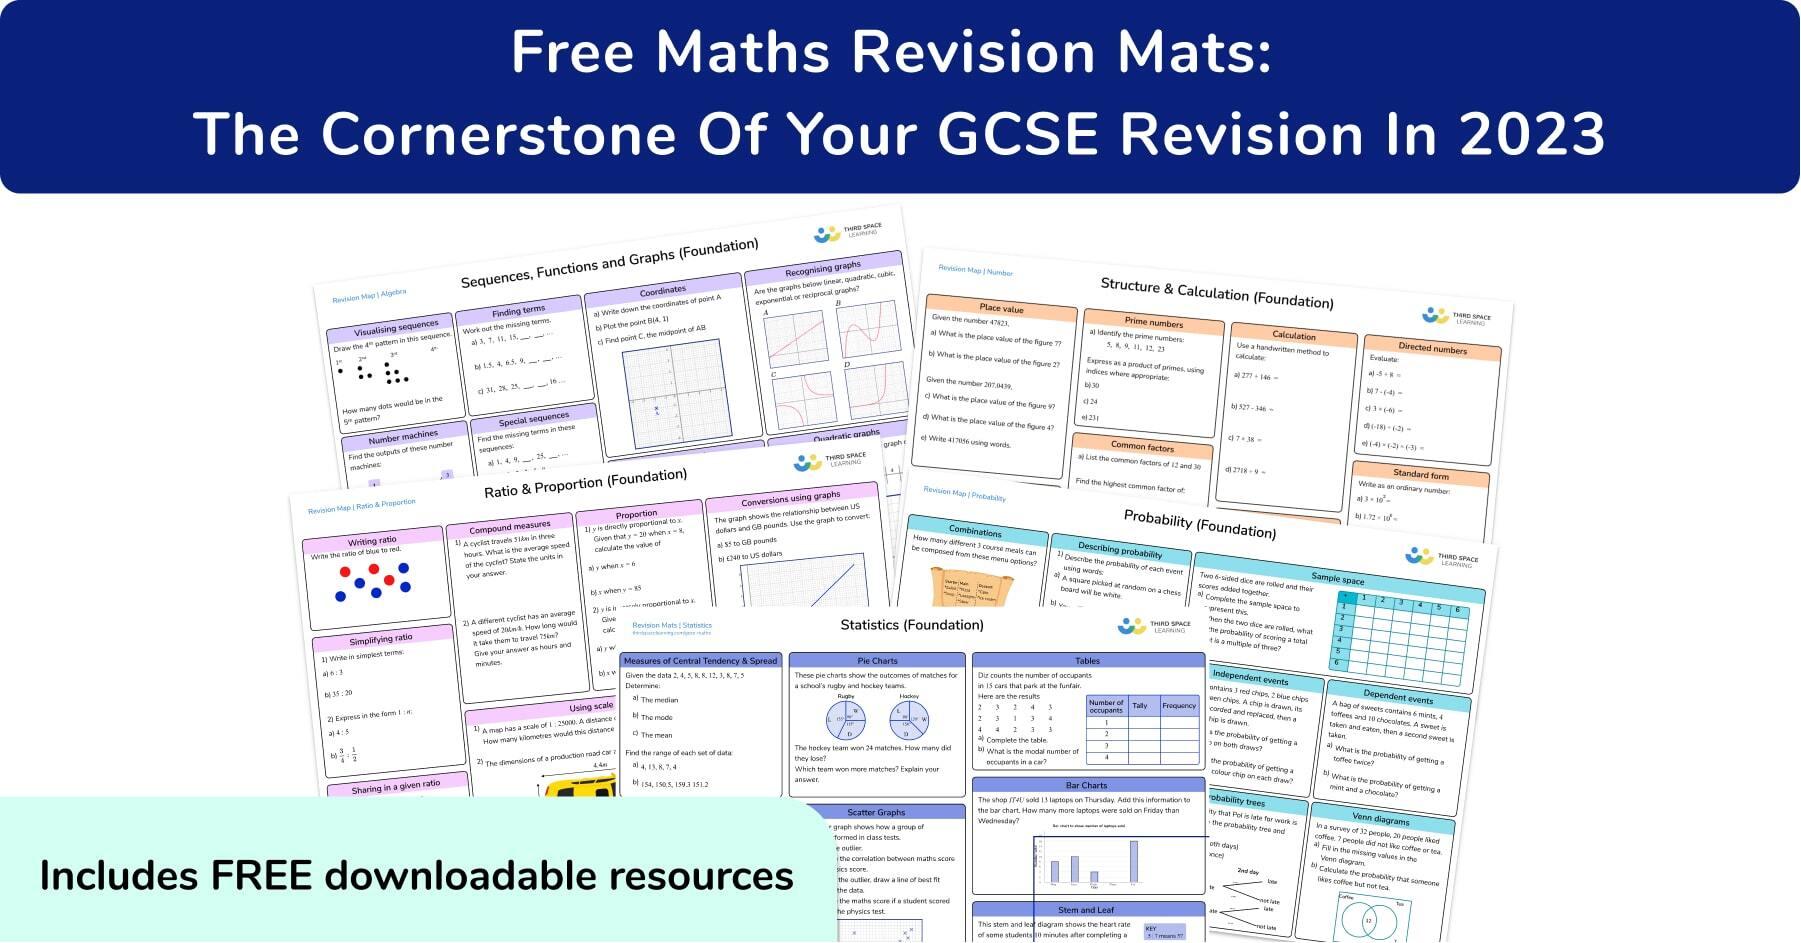 GCSE revision mats blog OG image